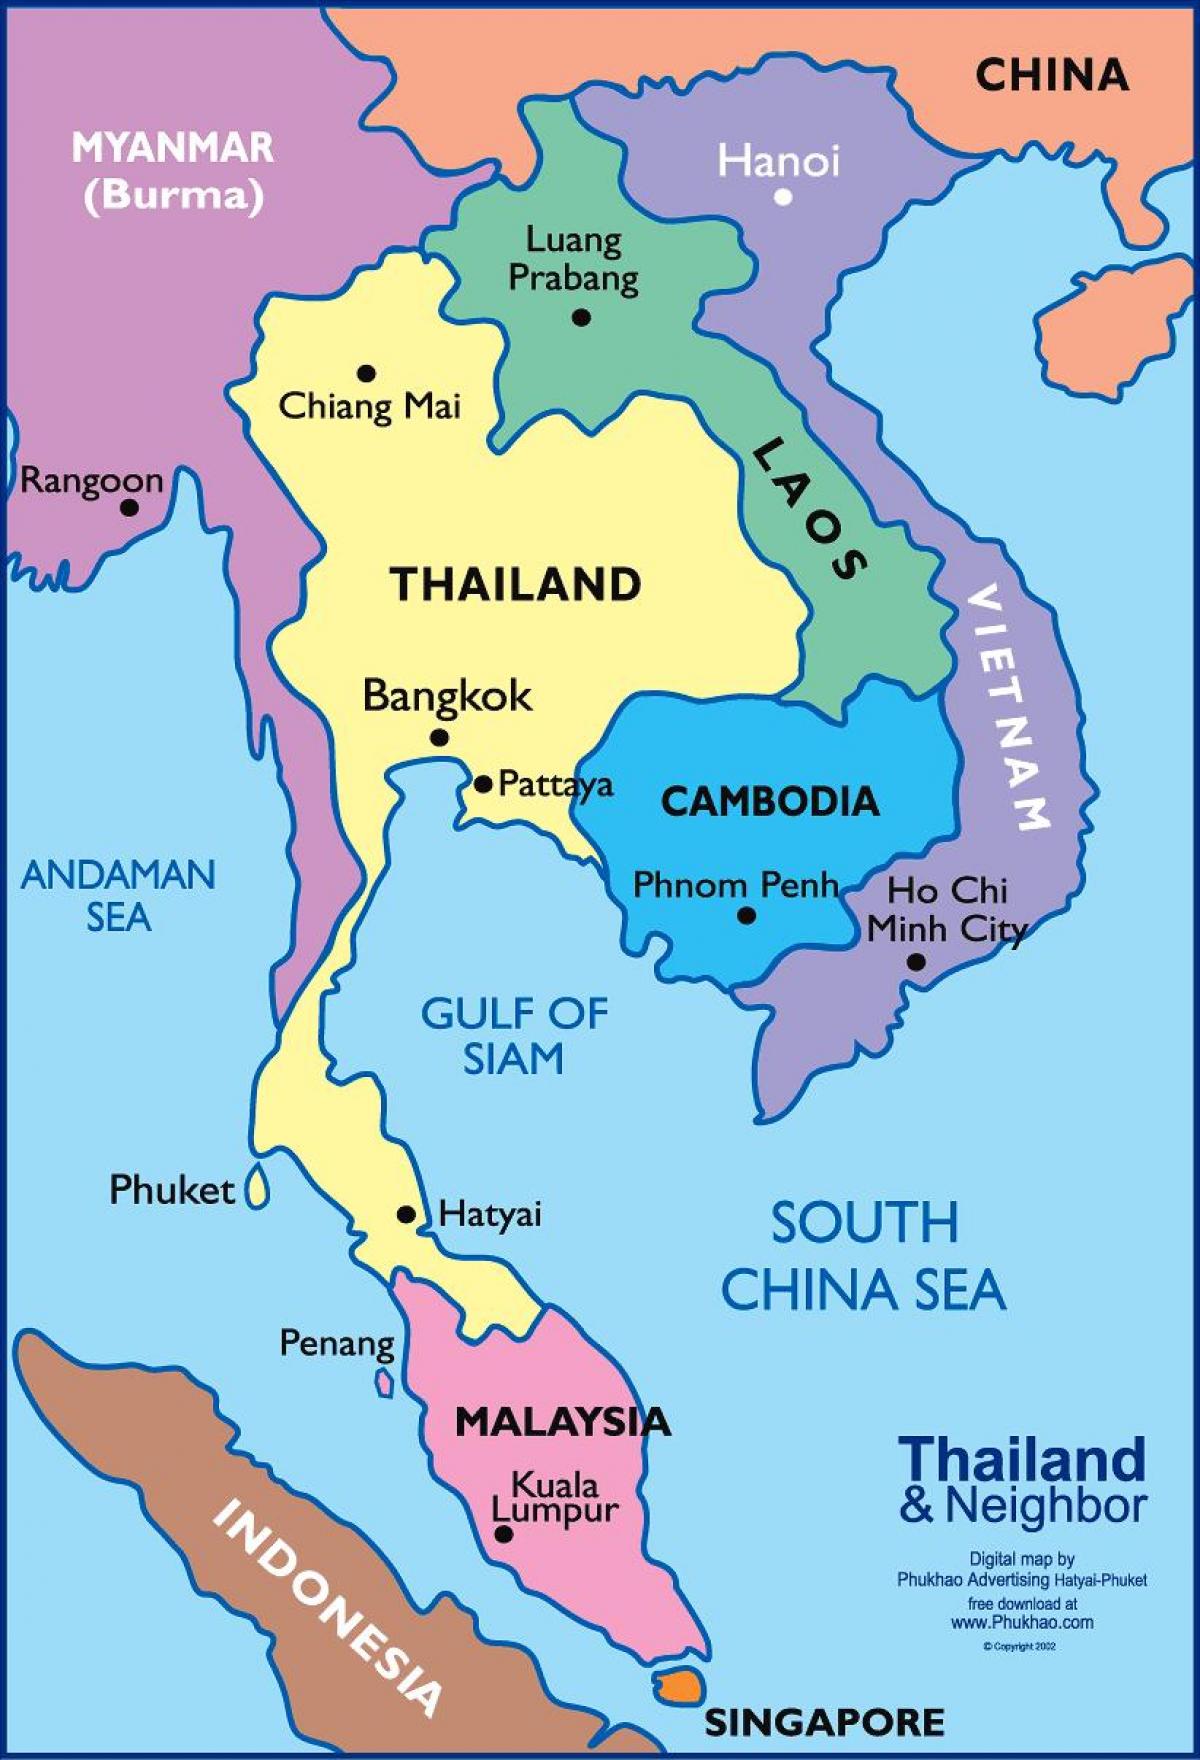 քարտեզի վրա Բանգկոկի